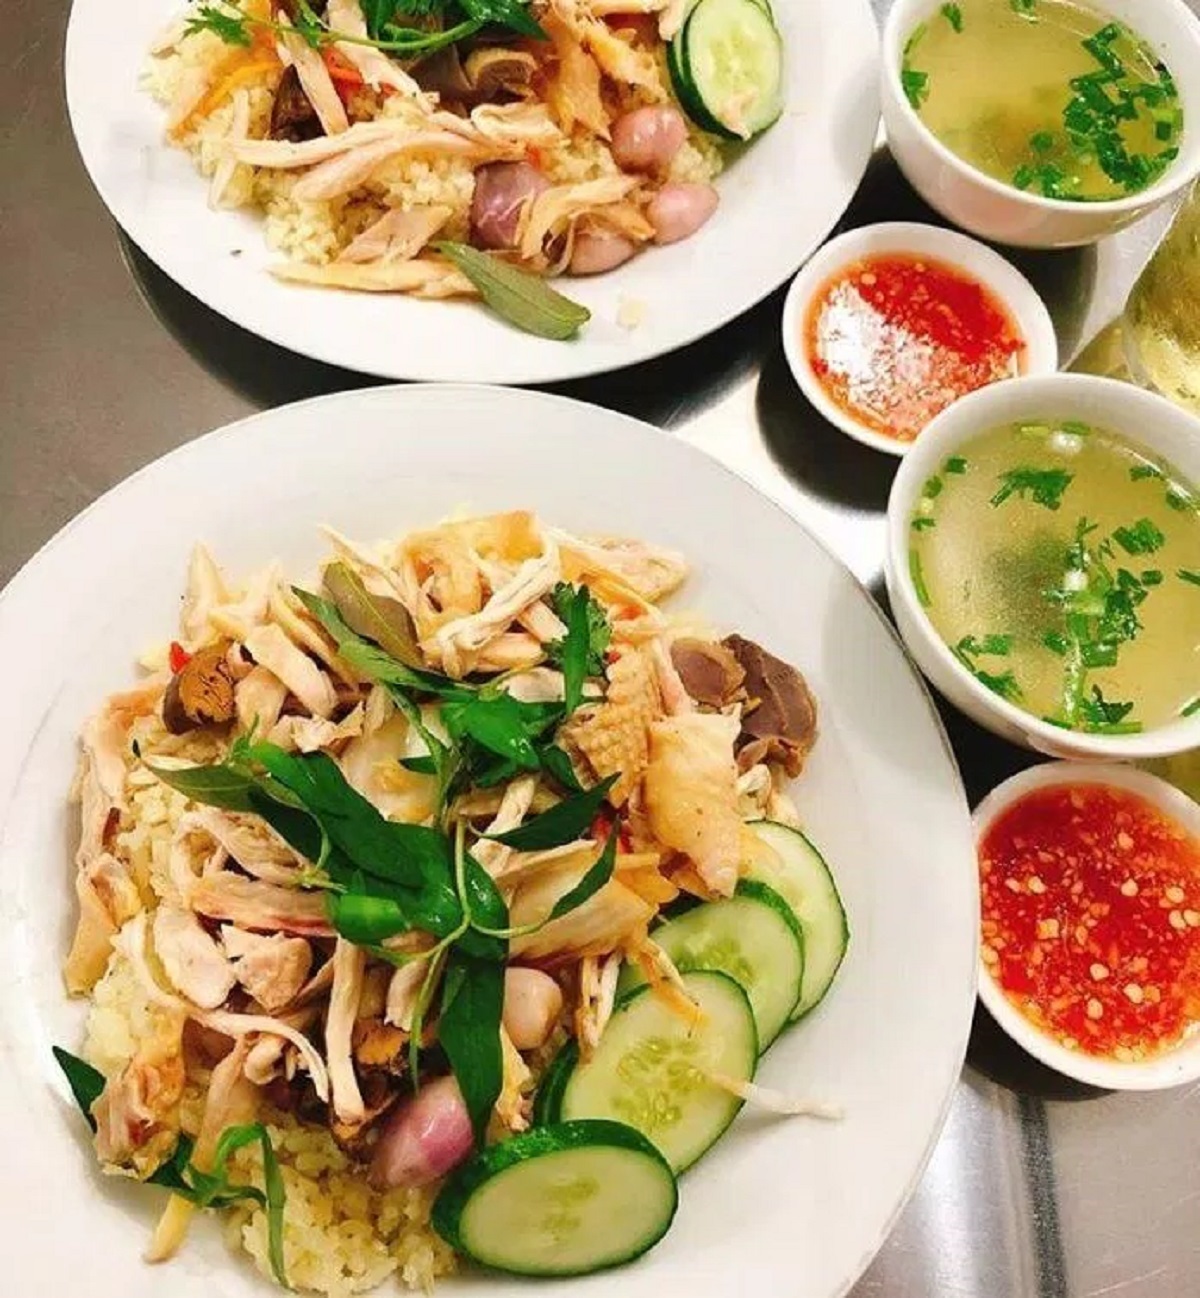 Thanh Thanh - Quán cơm gà Phú Yên